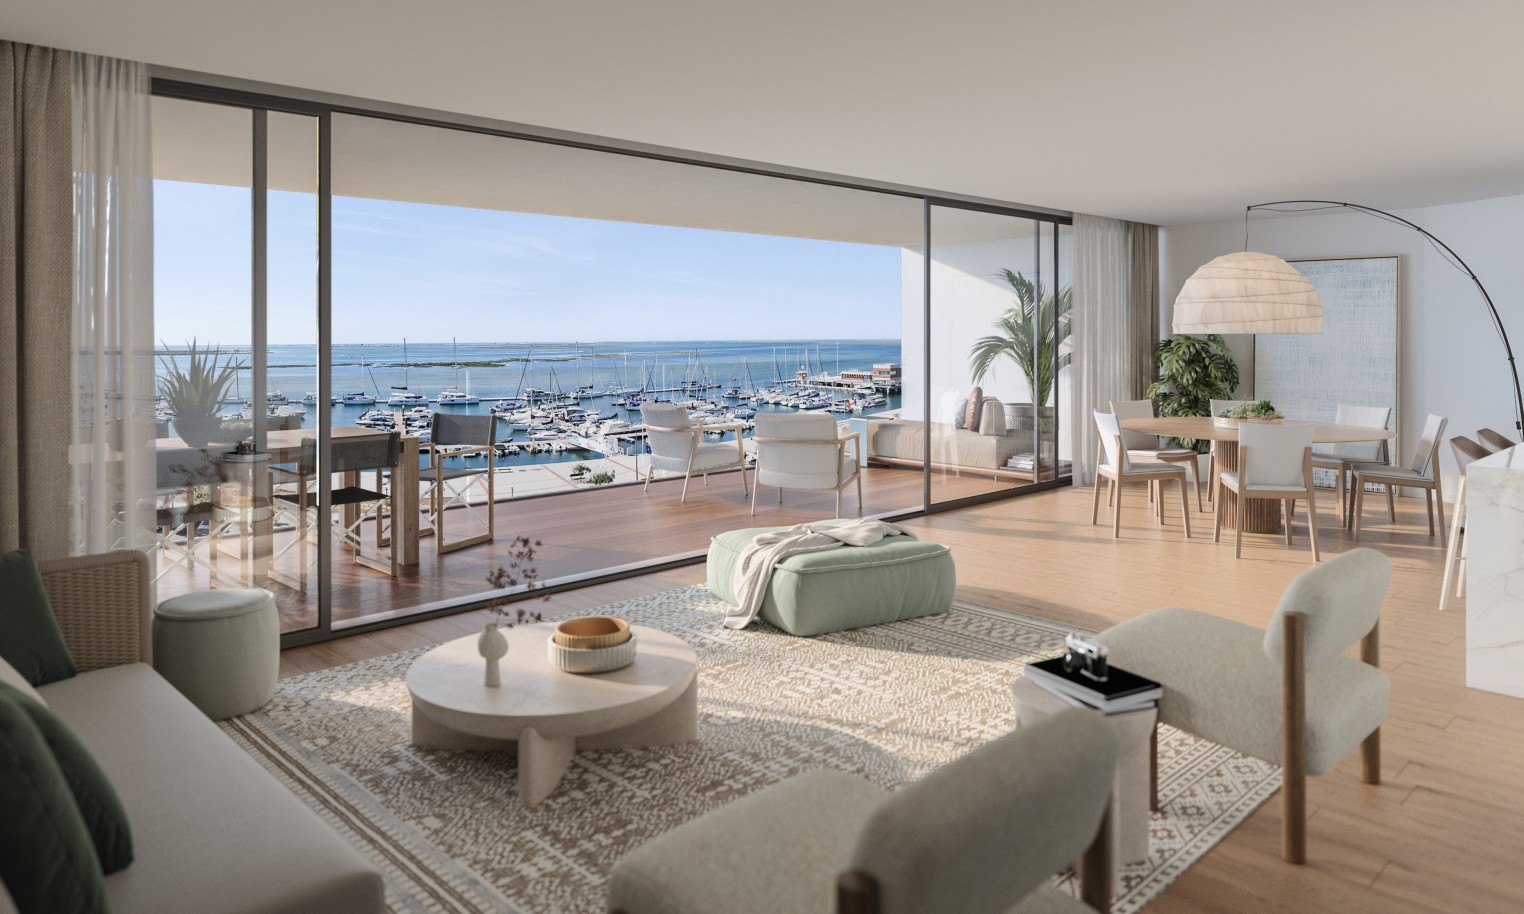 Pisos nuevos con vistas al mar, 1, 2 y 3 dormitorios, en venta en Olhão, Algarve_244274